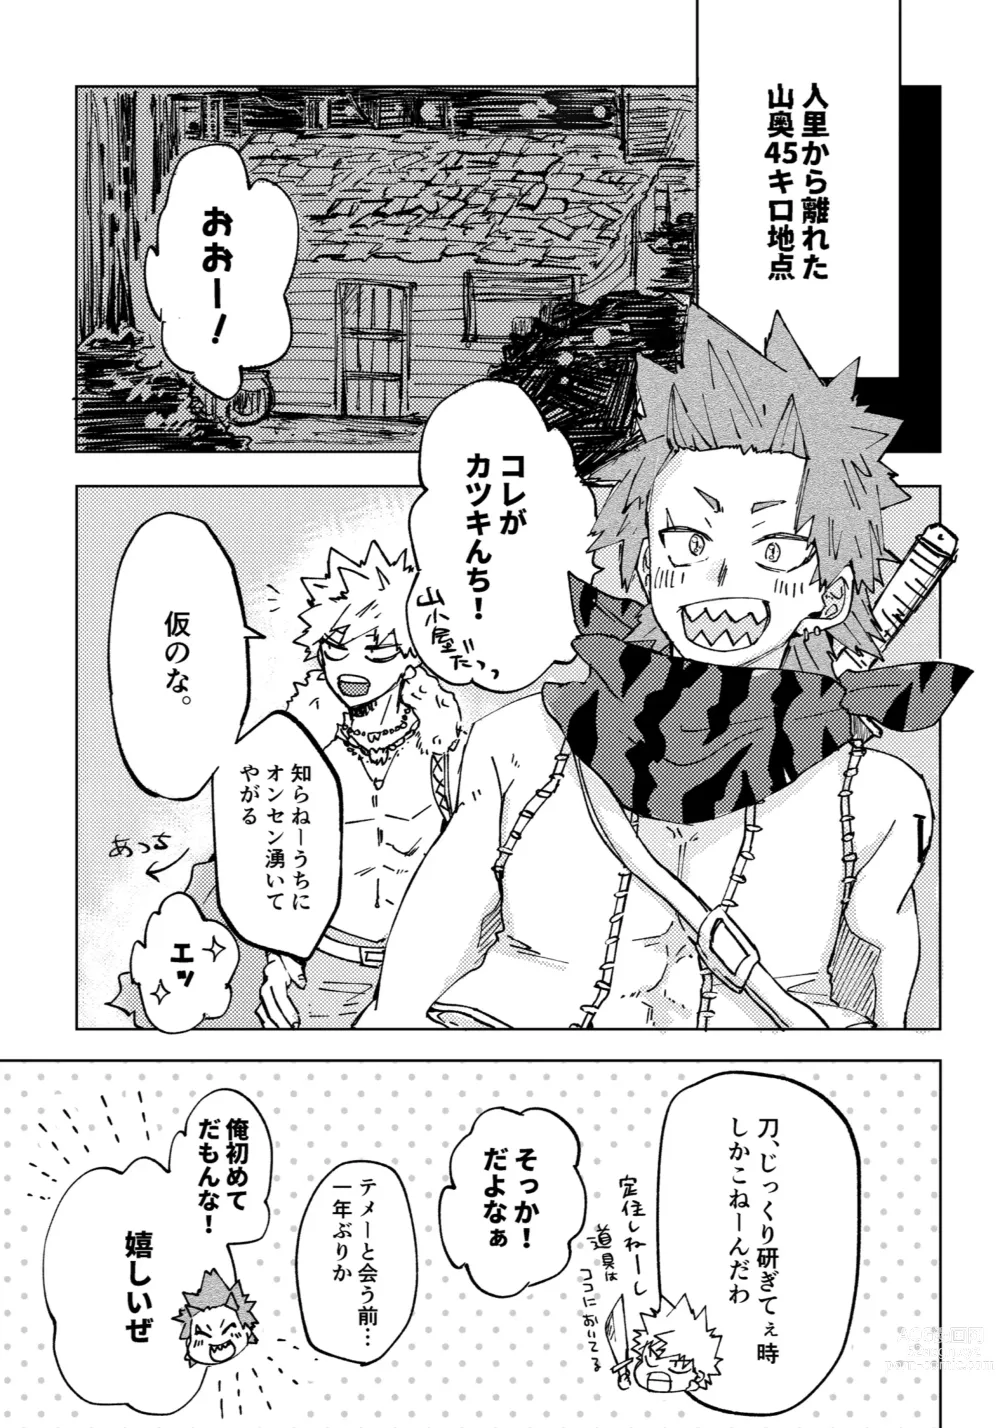 Page 3 of doujinshi Futatsu no Inochi